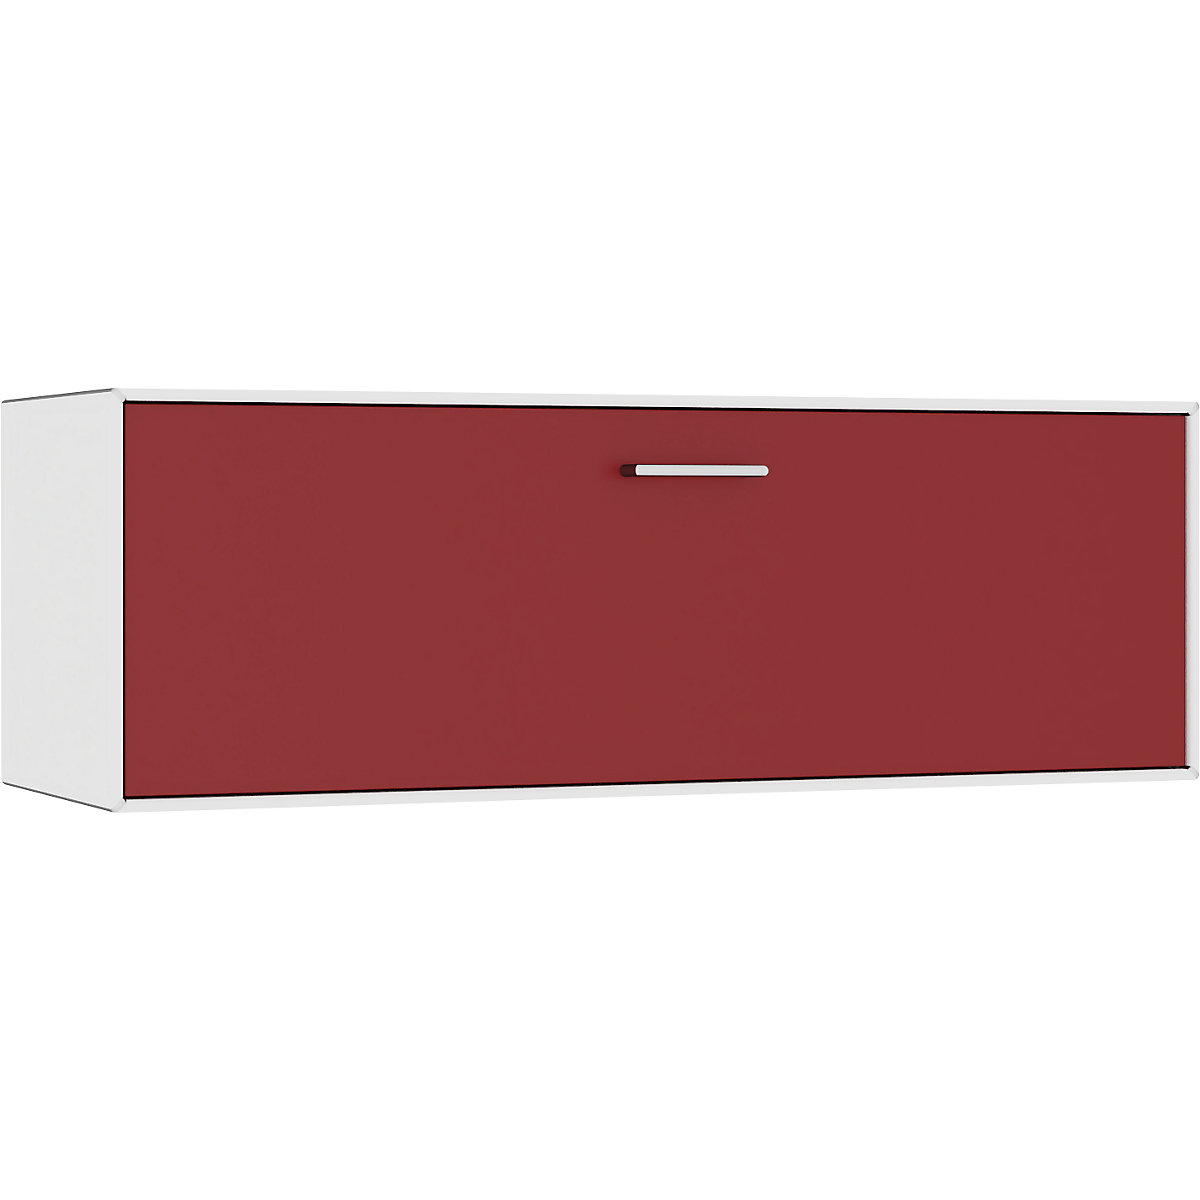 Einzelbox, hängend mauser, 1 Schublade, Breite 1155 mm, reinweiß / rubinrot-5